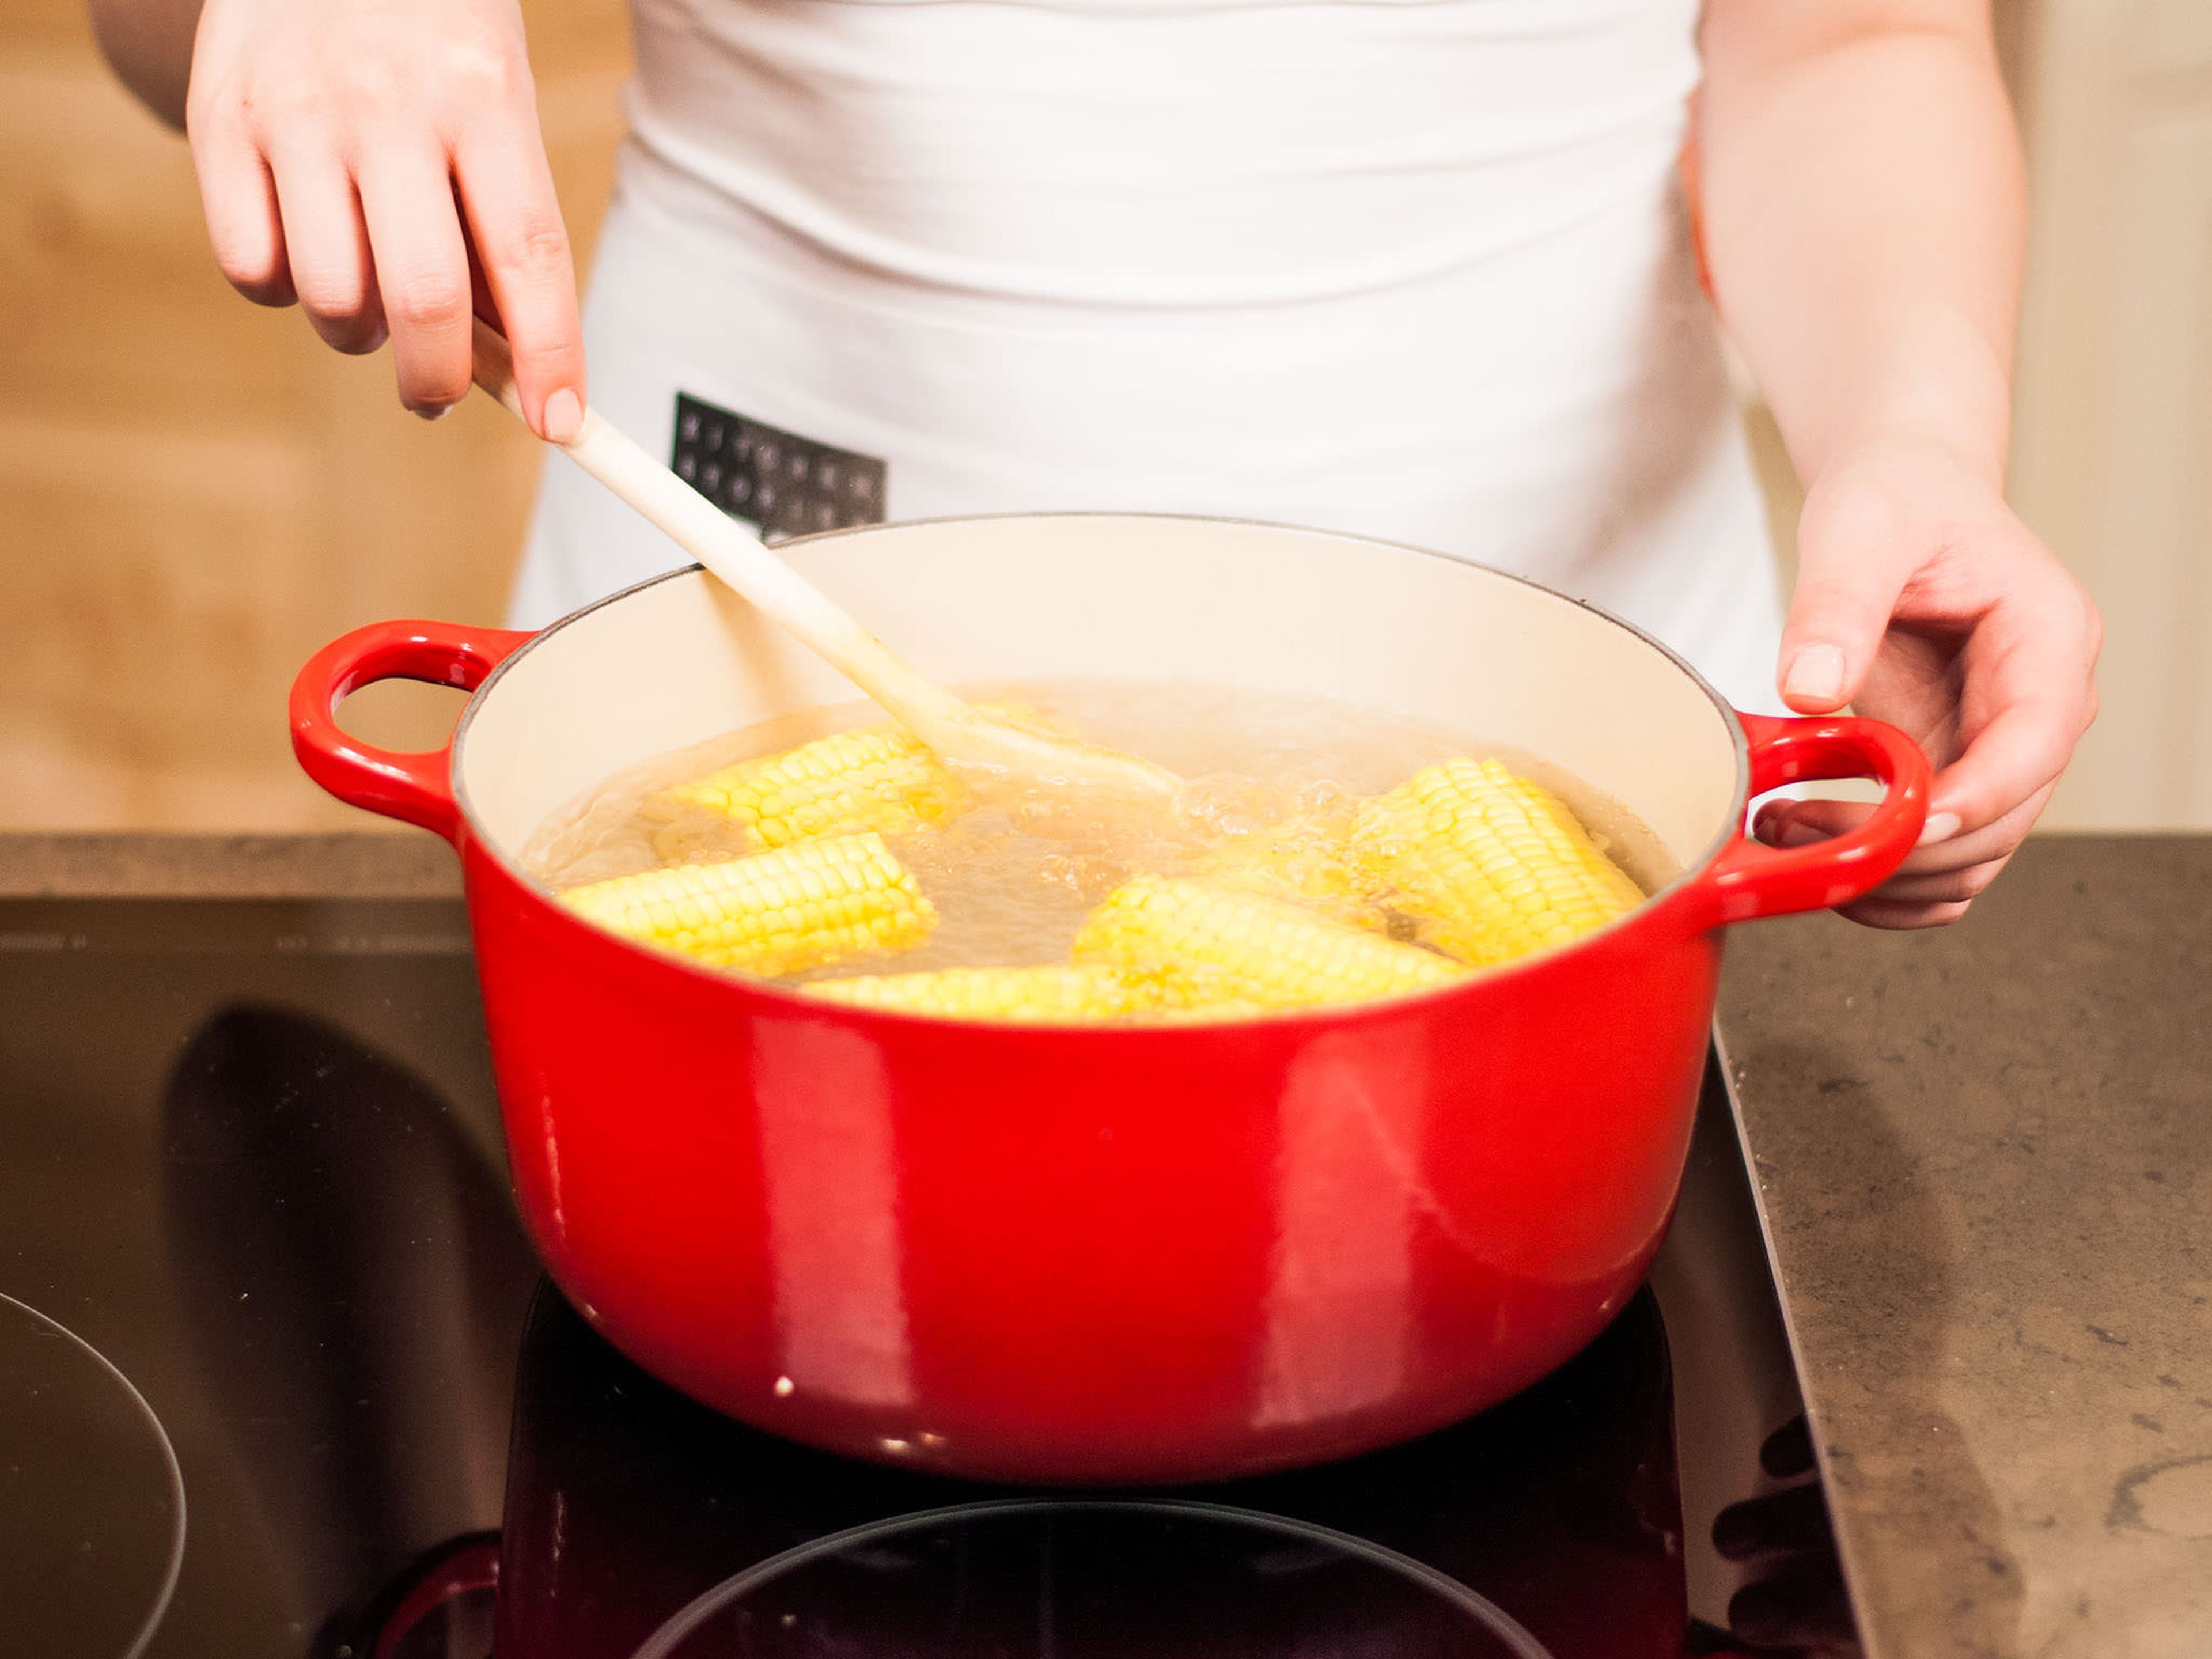 Grill vorheizen. Den Mais putzen, harte Enden entfernen und portionieren. Die Maisstücke in kochendes Salzwasser geben und ca. 15 – 20 Min. kochen.